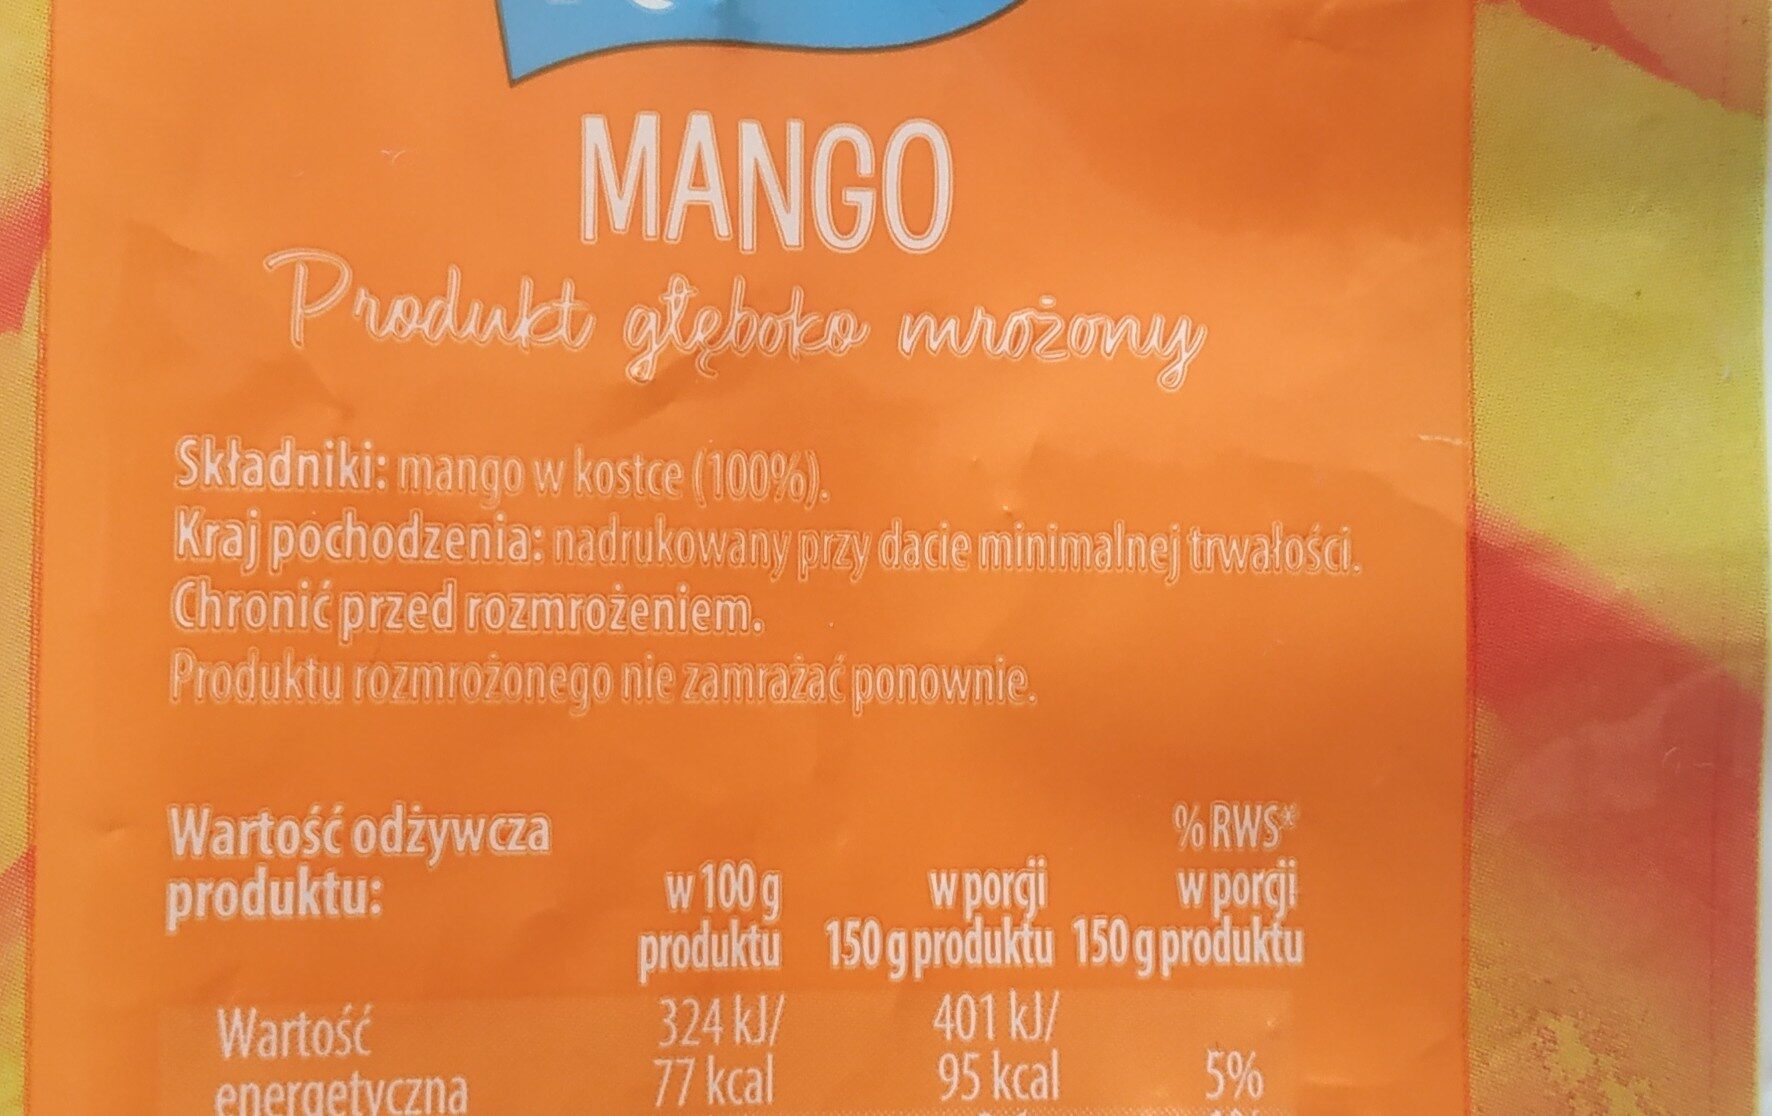 Mango w kostce mrożone (100% owoców). - Ingrédients - pl